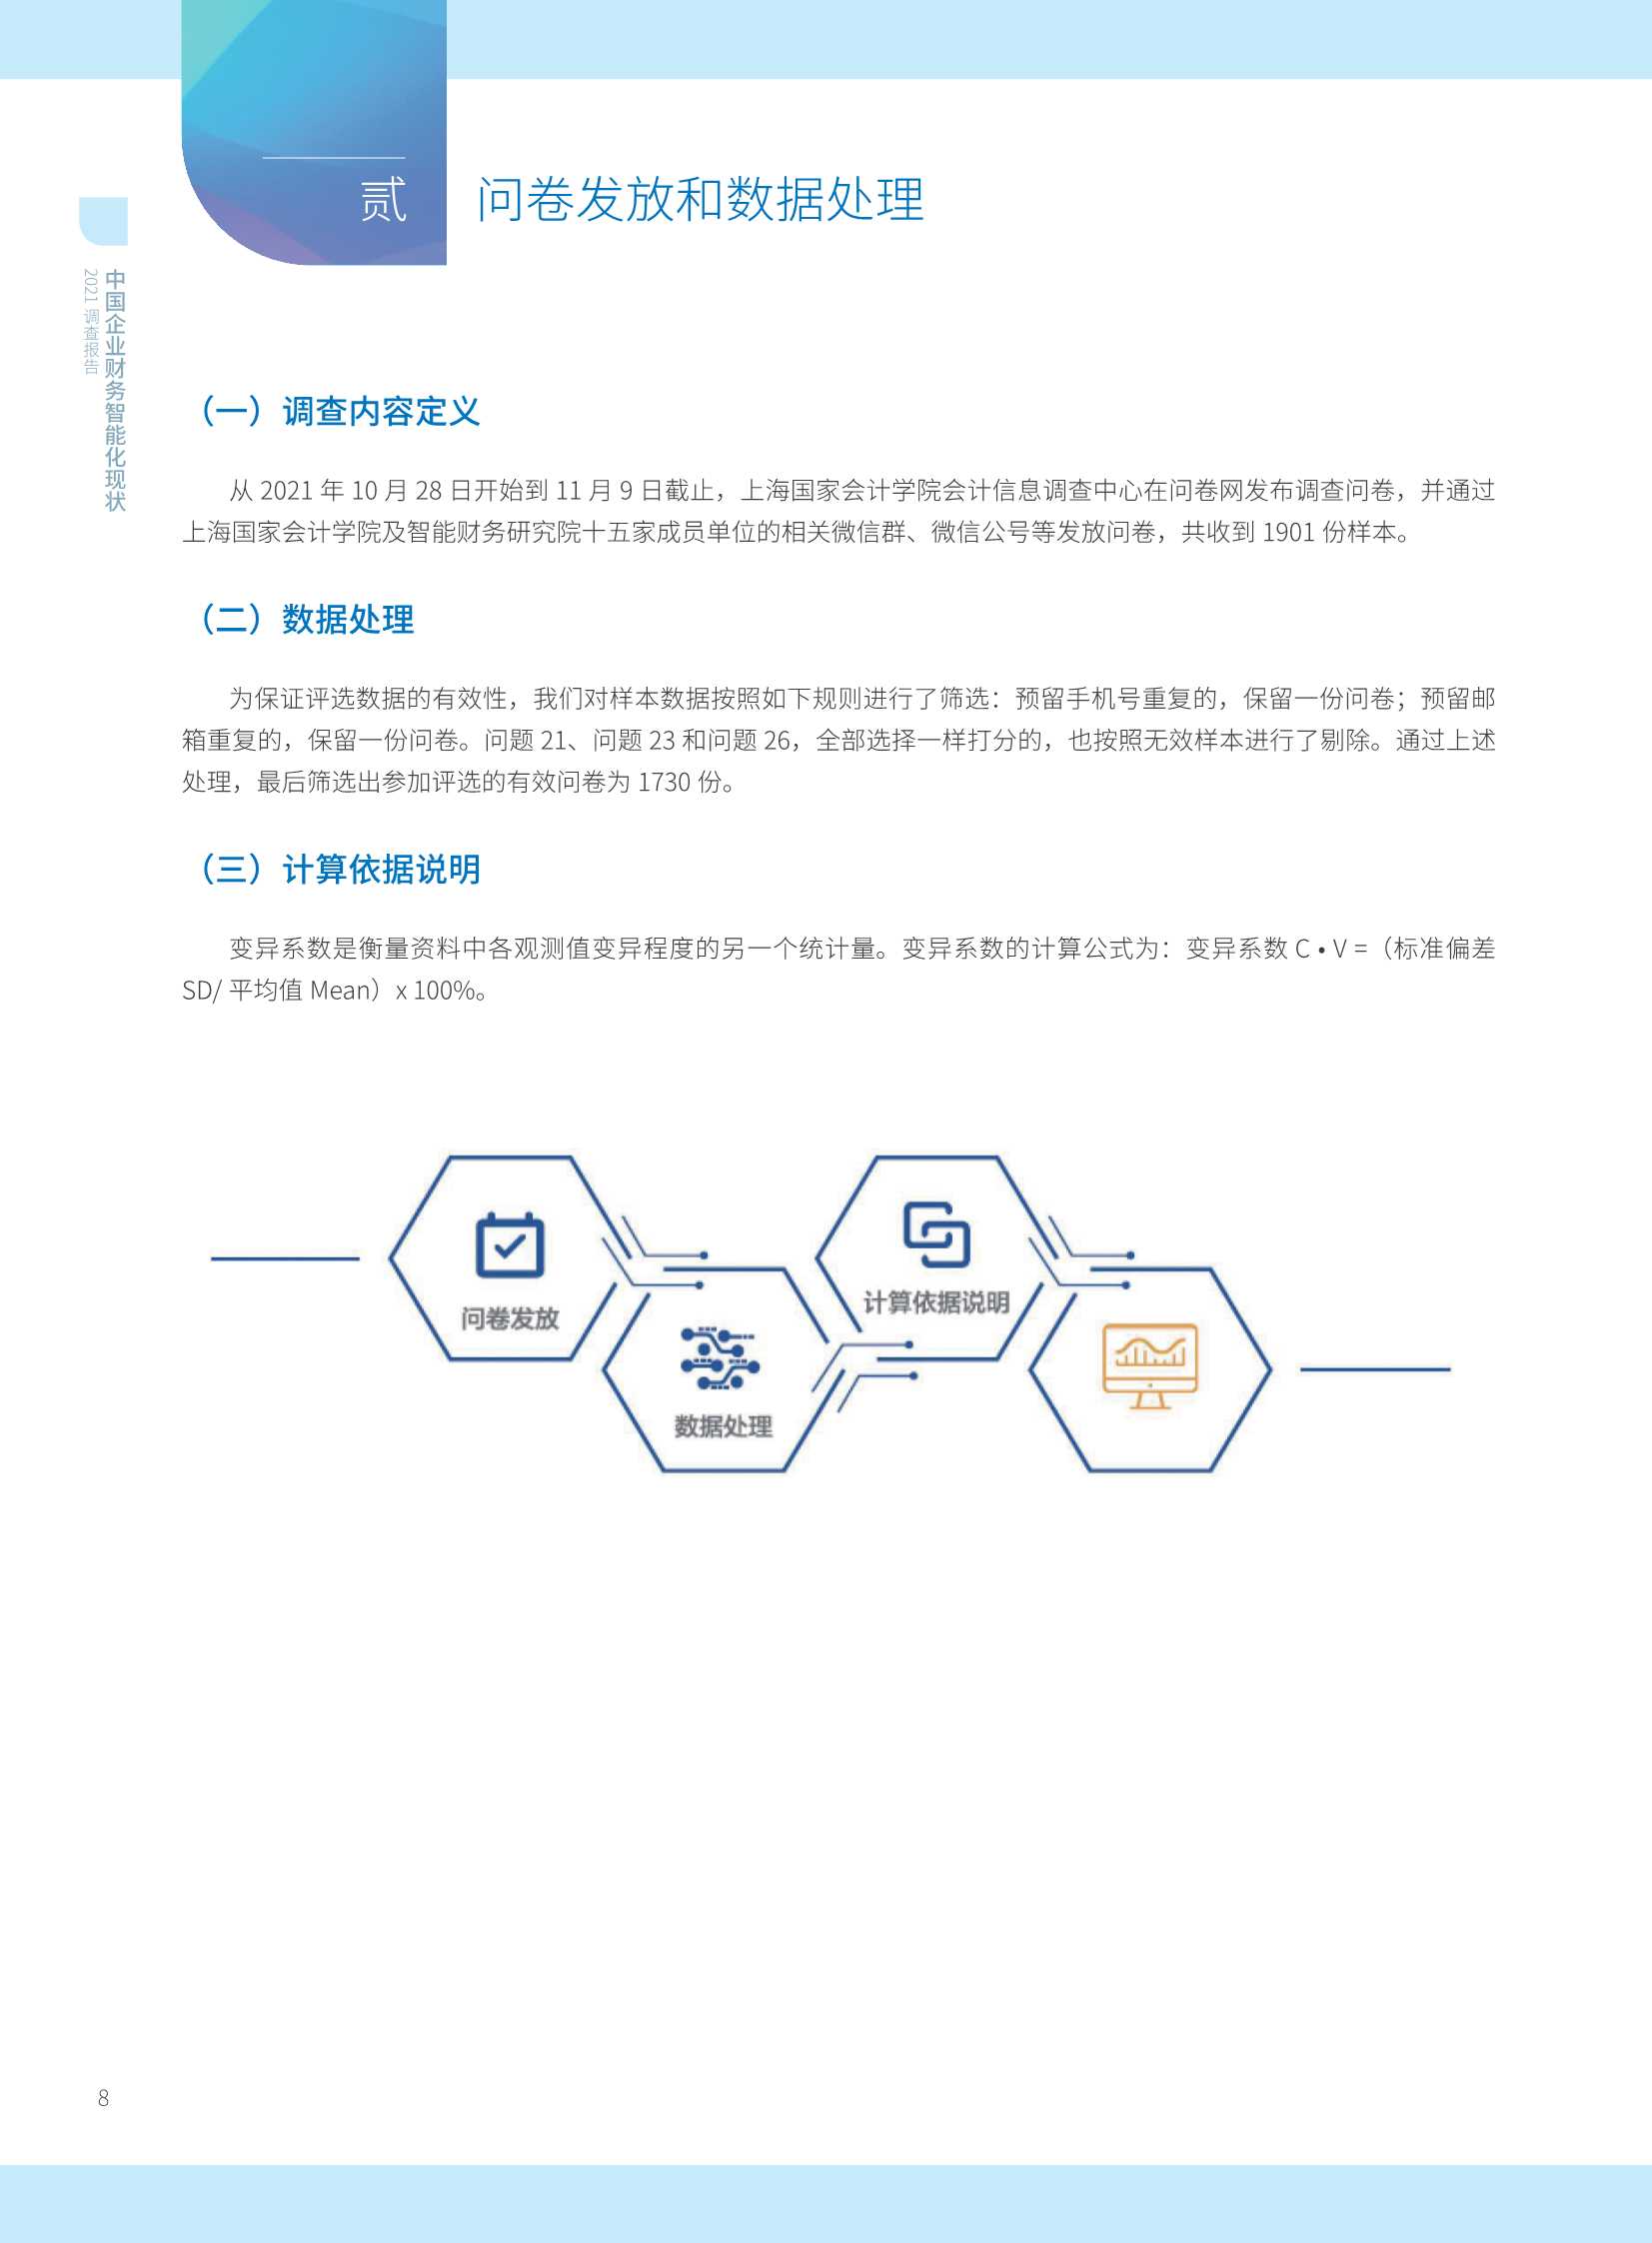 2021年中国智能财务应用现状调查报告